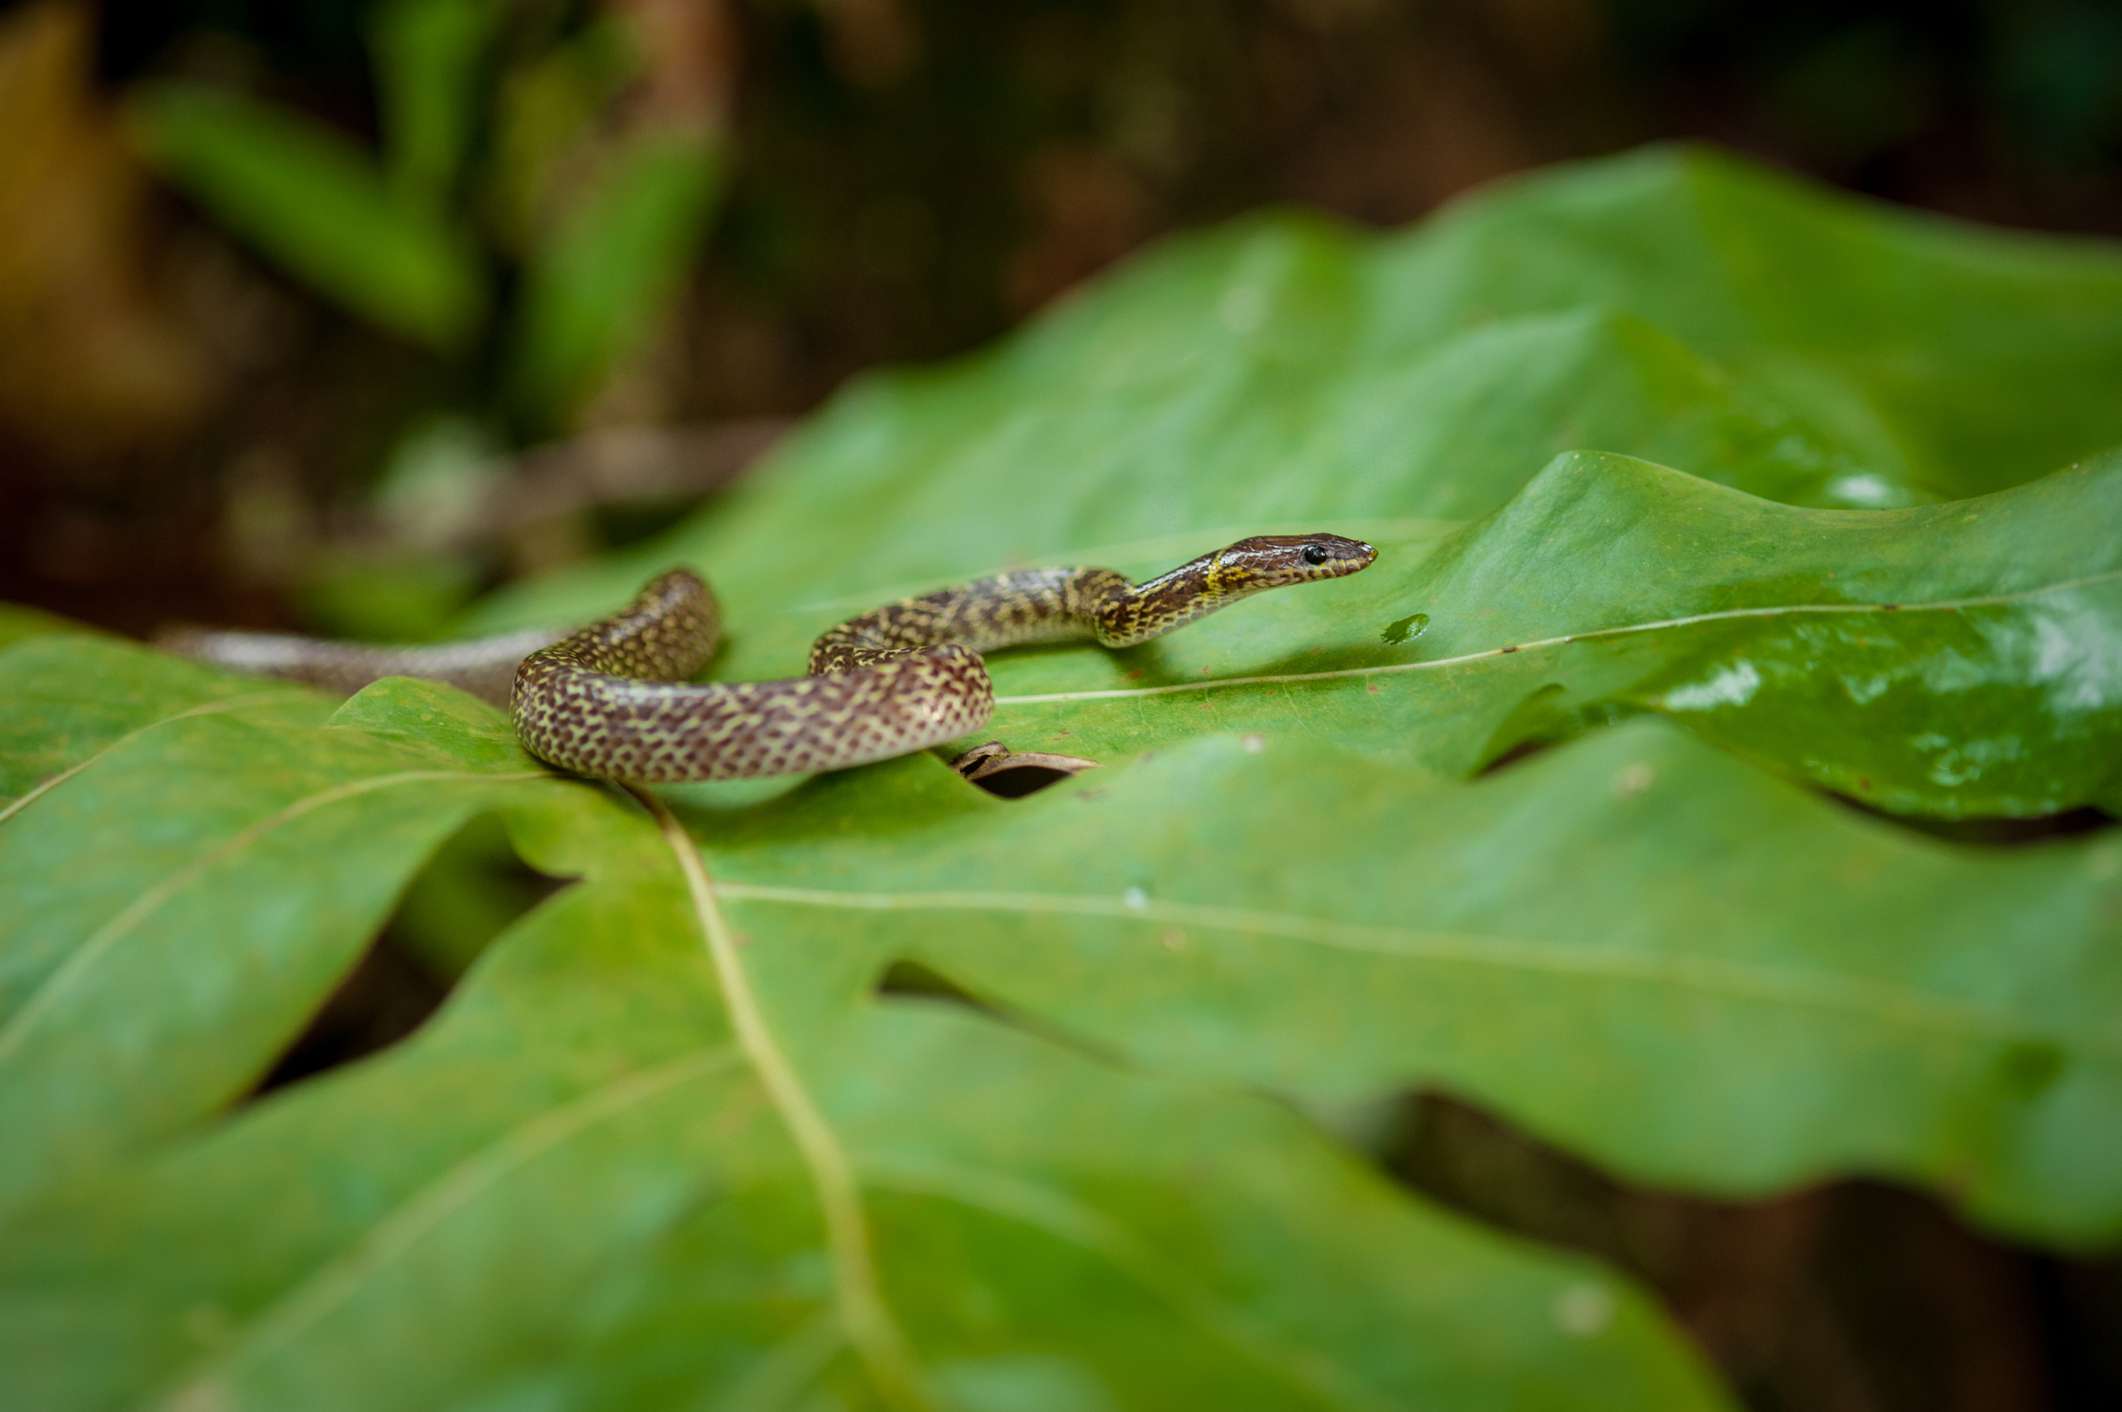 Una serpiente marrón y blanca planeando sobre una gran hoja verde